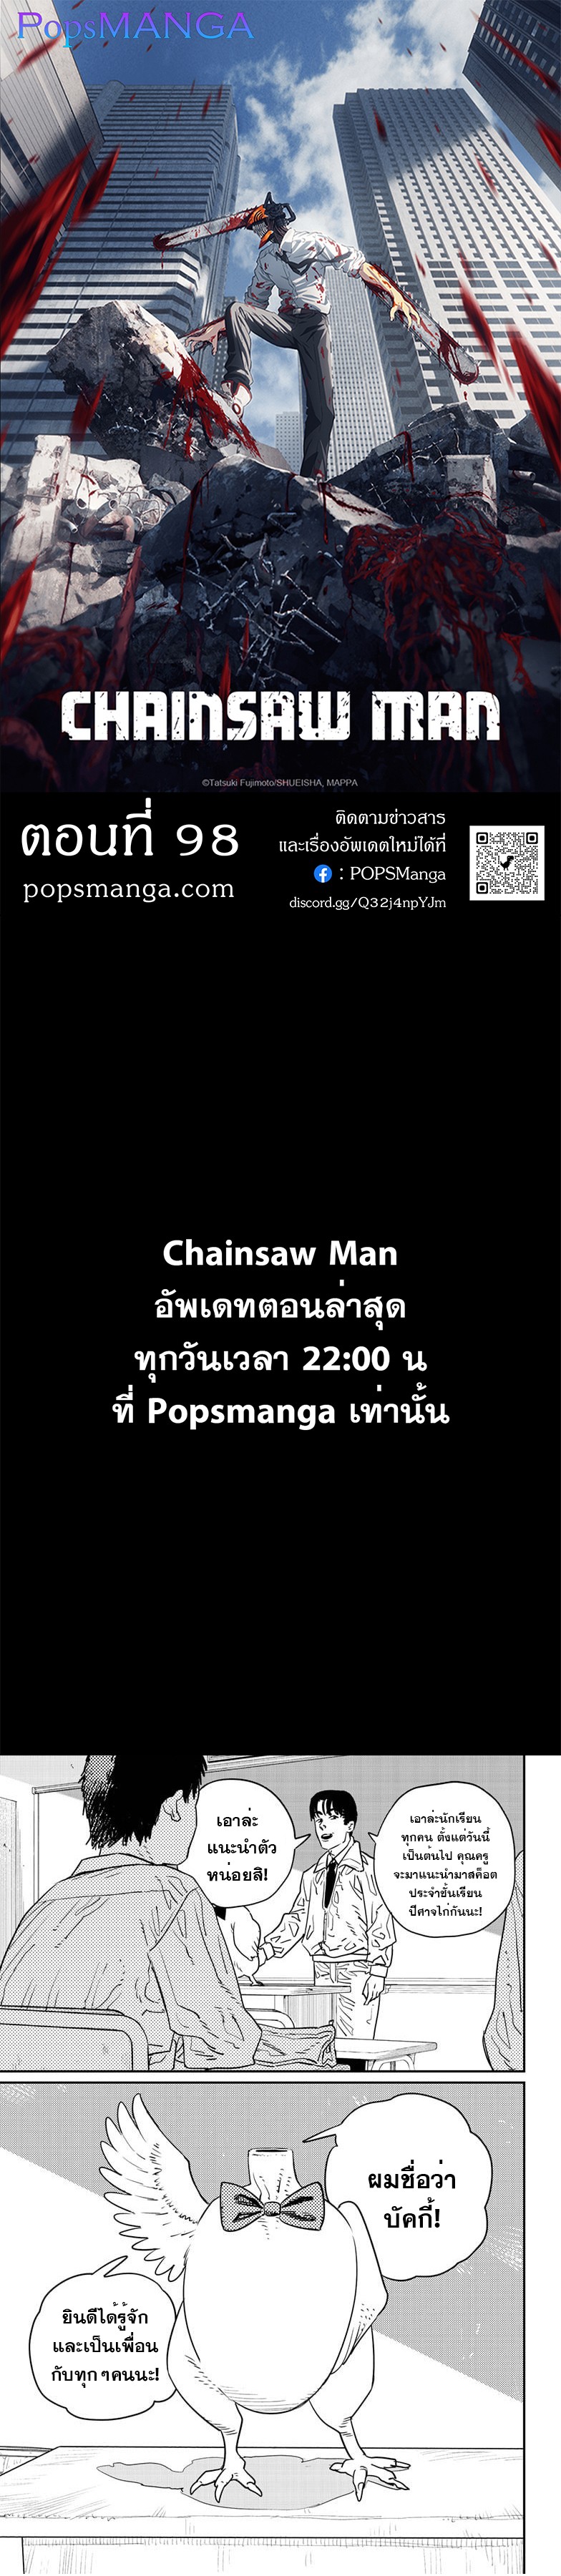 Chainsaw Man 98 01